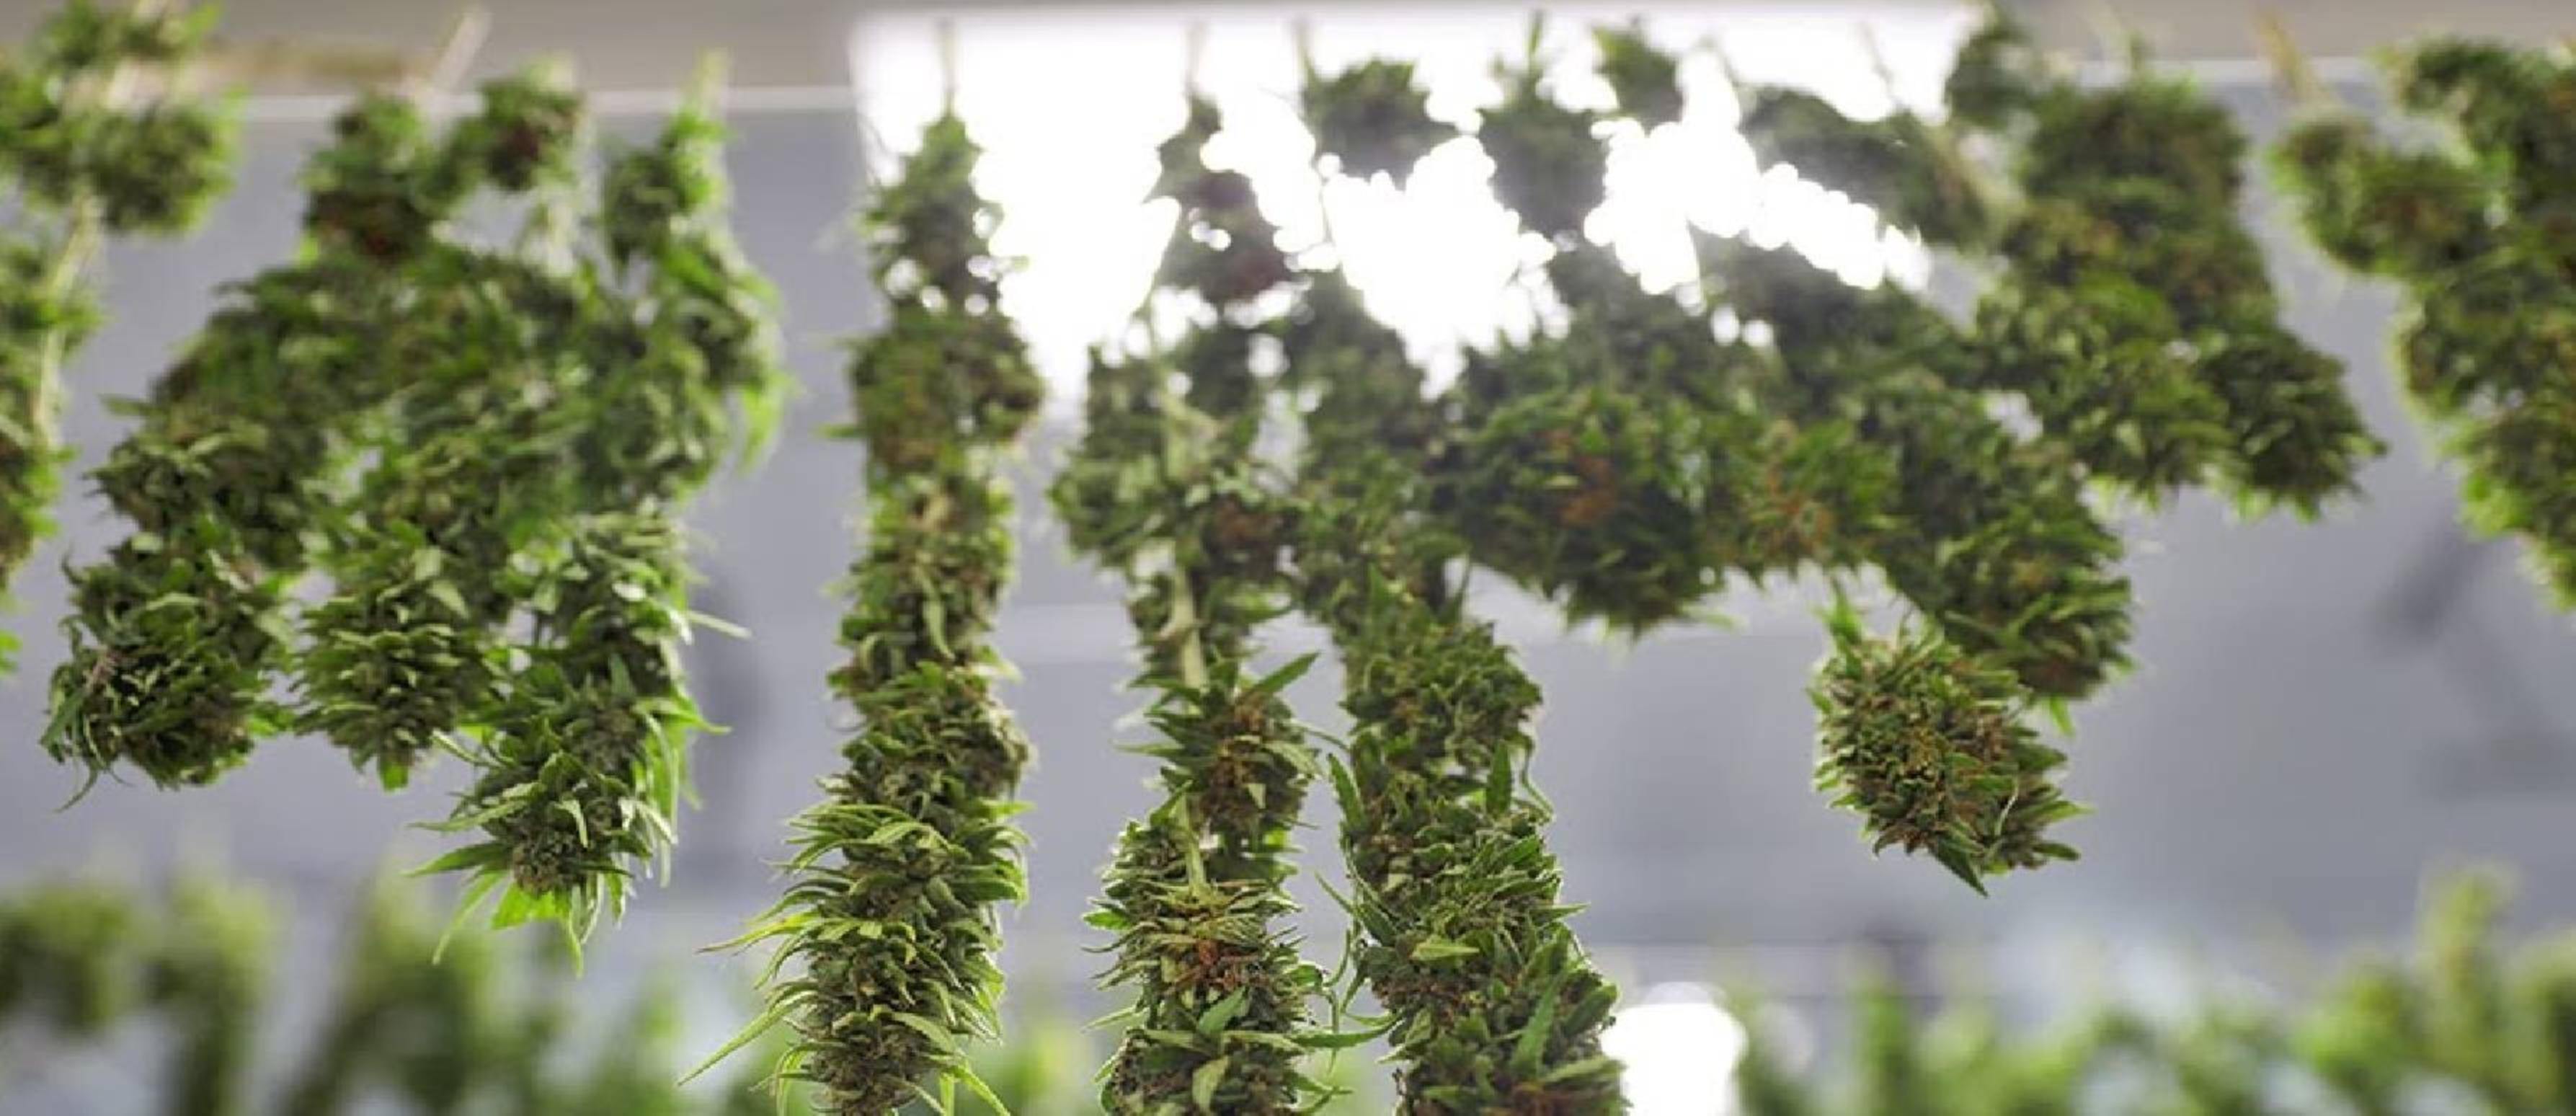 La cosecha, el secado, y la conservación del Cannabis